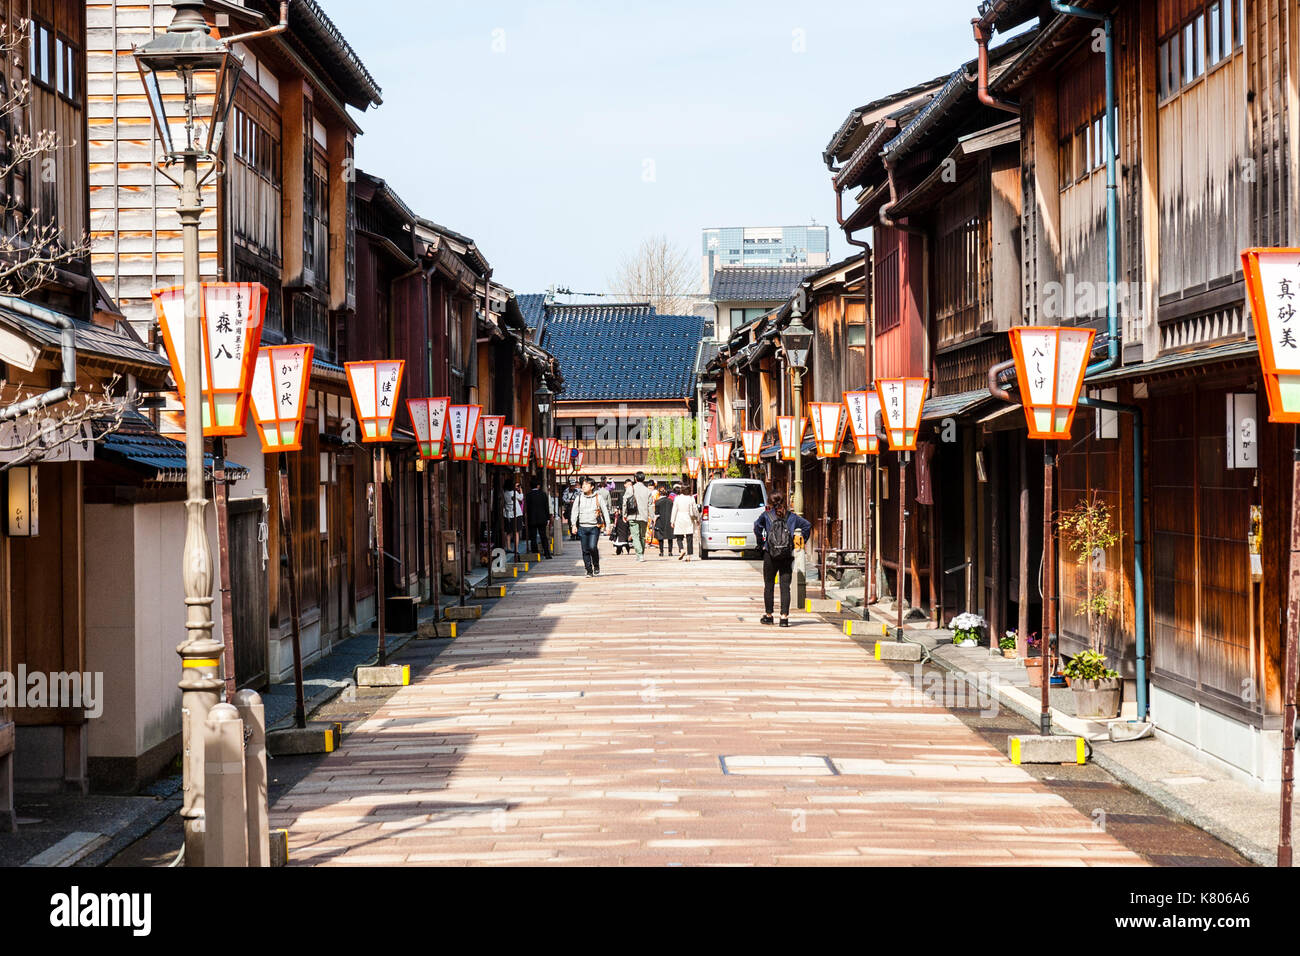 Destination touristique populaire, quartier Higashi Chaya à Kanazawa. Rue bordée des deux côtés par des bâtiments en bois de la période Edo, ryokan, boutiques et auberges. Banque D'Images